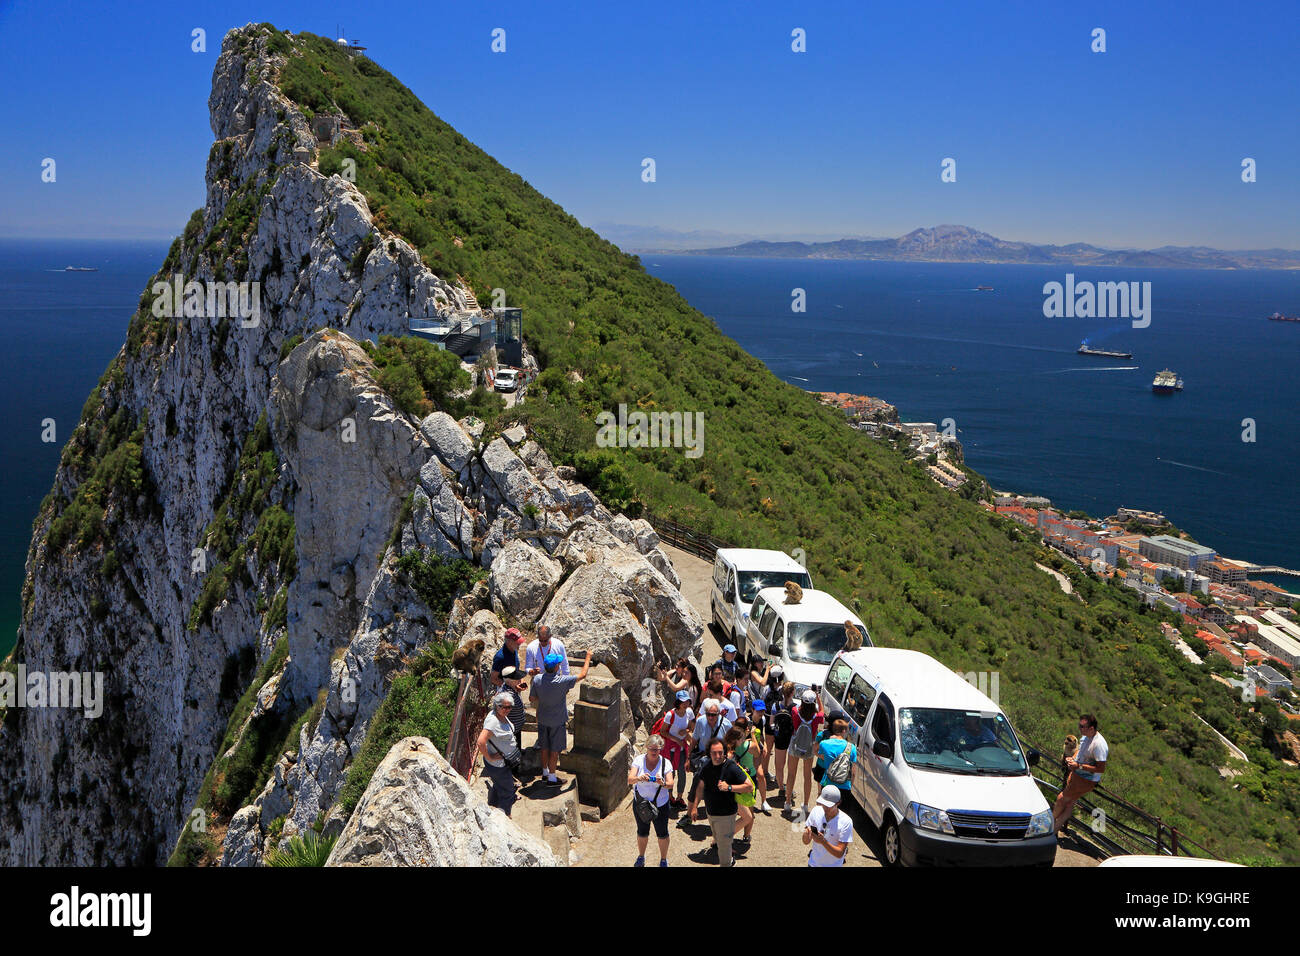 Gibraltar, Grande Bretagne - Juillet 01, 2017 : les touristes qui arrivent avec des bus et le paysage qui défile de Gibraltar le territoire britannique d'outre-mer. Banque D'Images